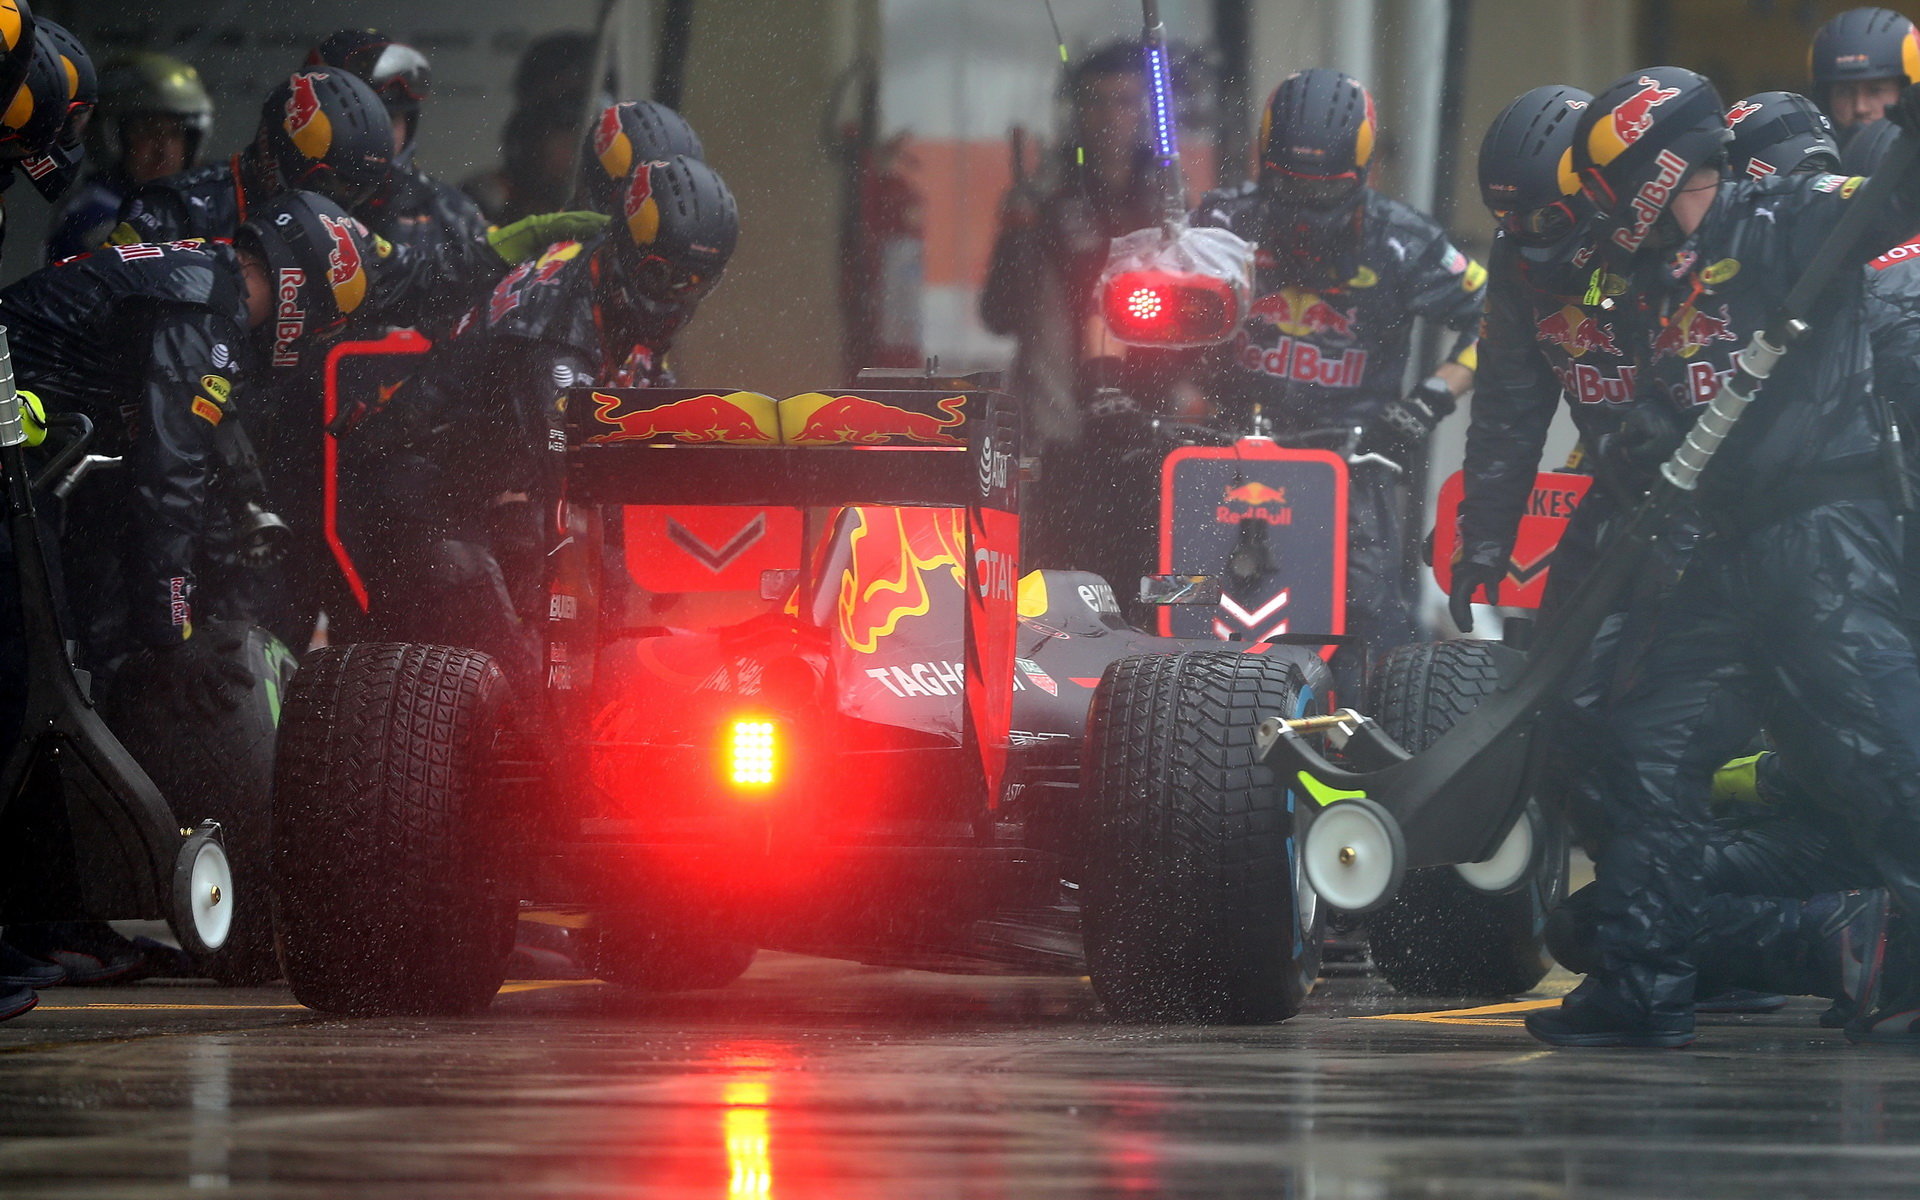 Daniel Ricciardo počas deštivého závodu v Brazílii